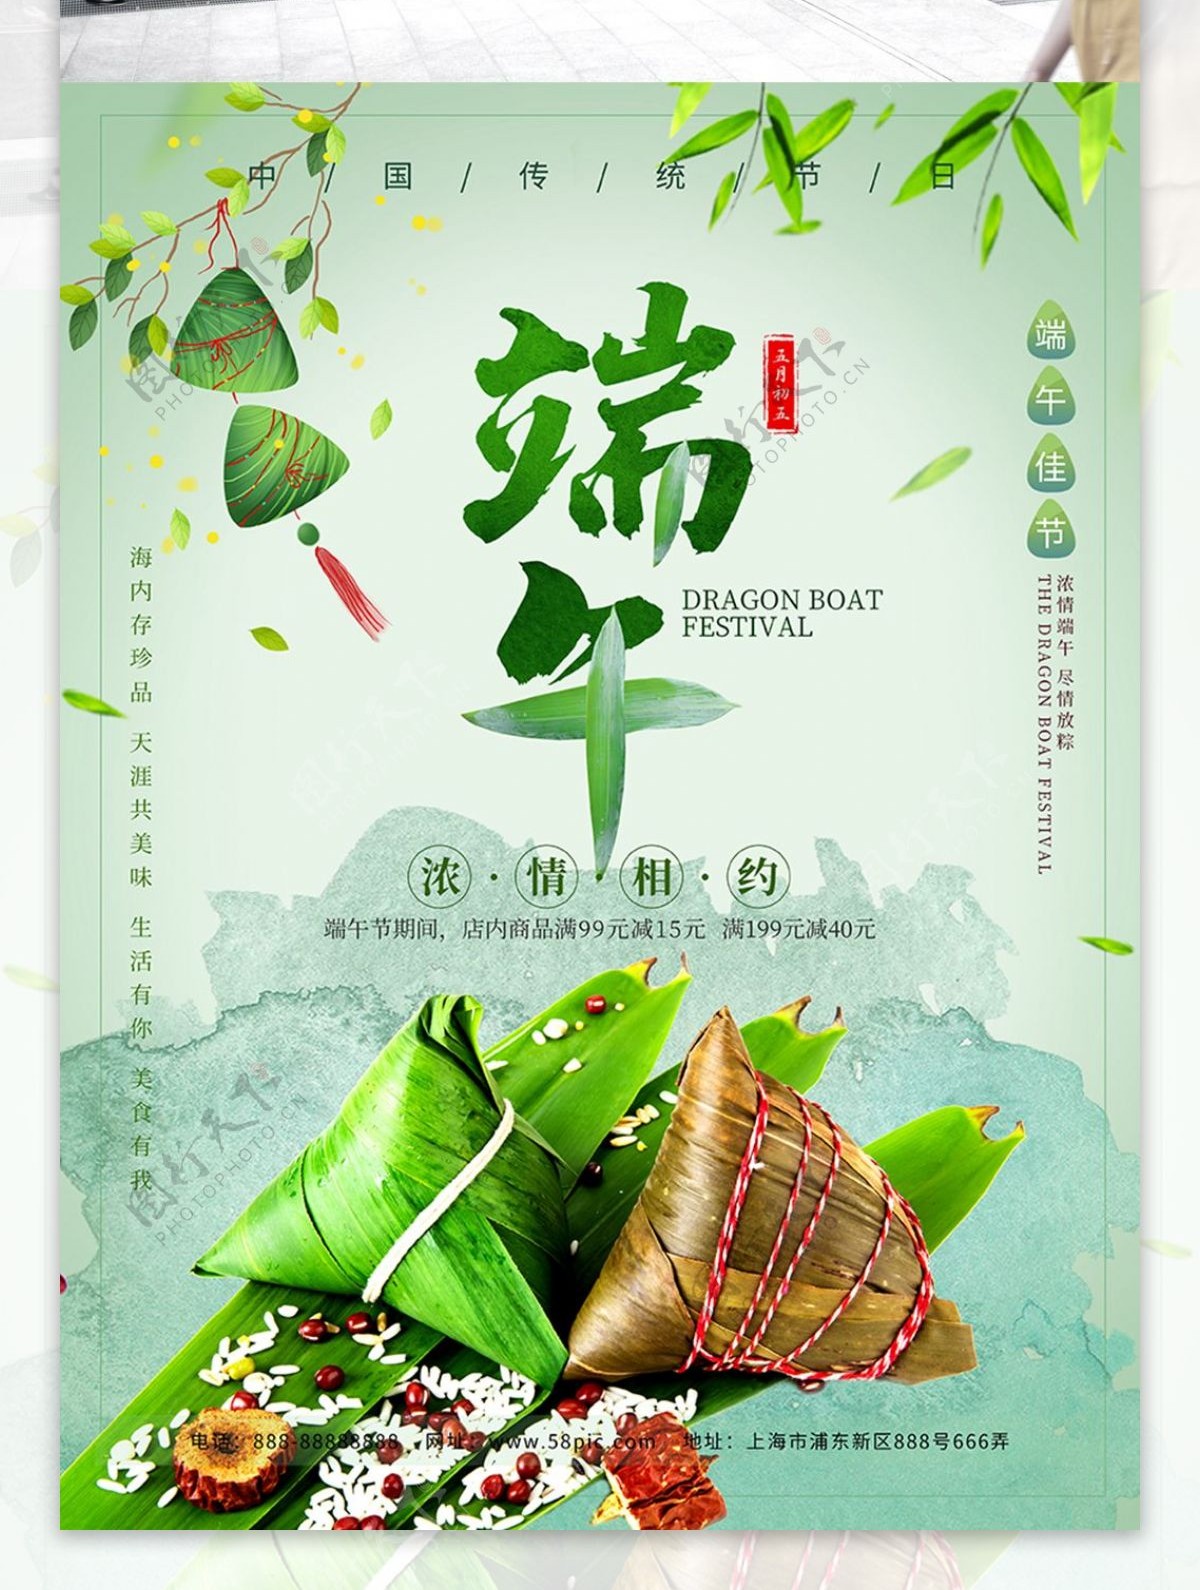 中国传统节日端午佳节浓情相约节日促销海报